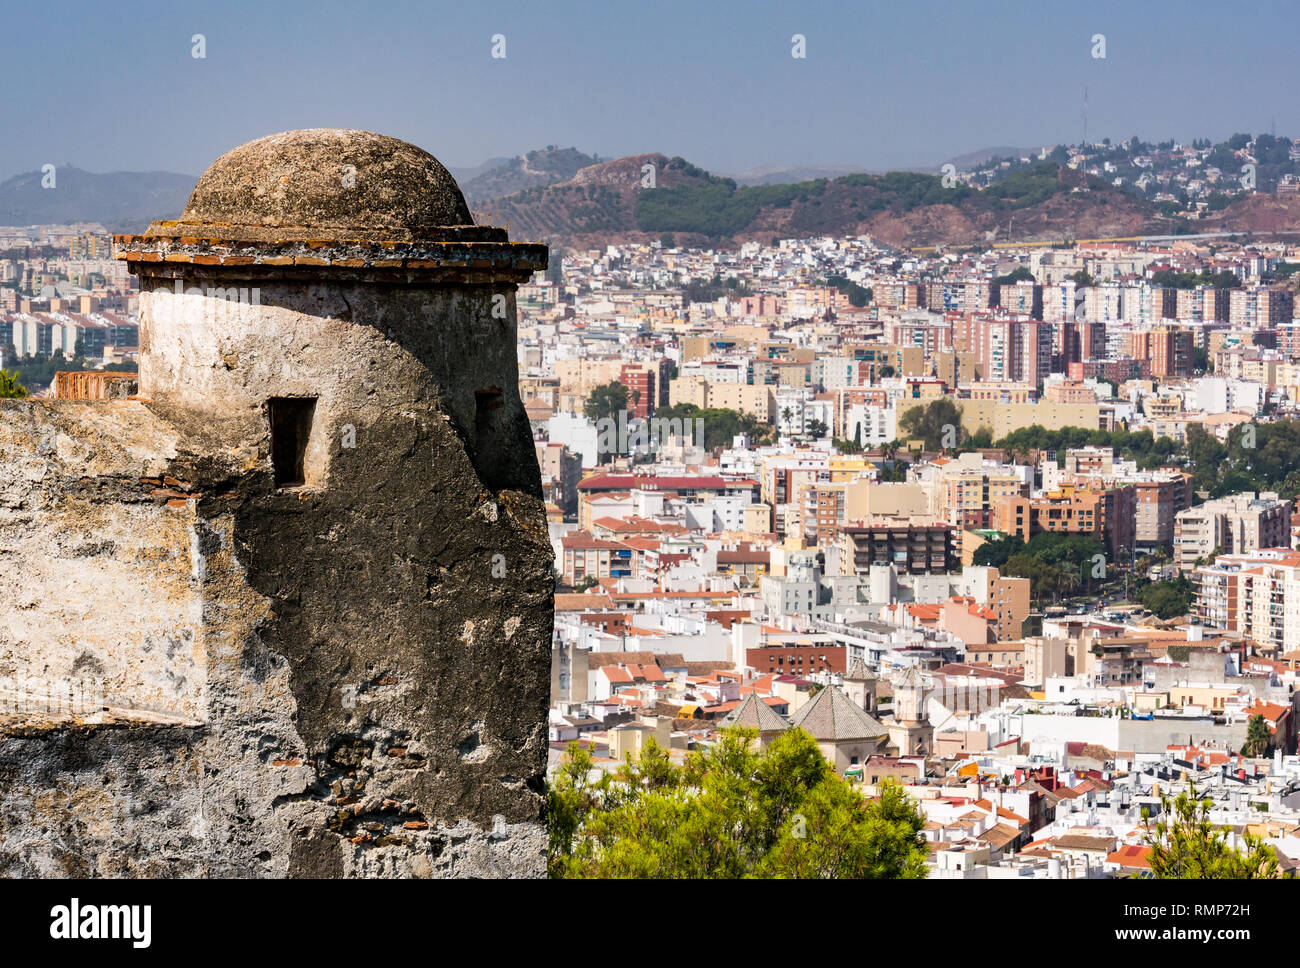 Outlook tower presso la fortezza di Gibralfaro, con vista sui tetti di Malaga città vecchia, Andalusia, Spagna Foto Stock